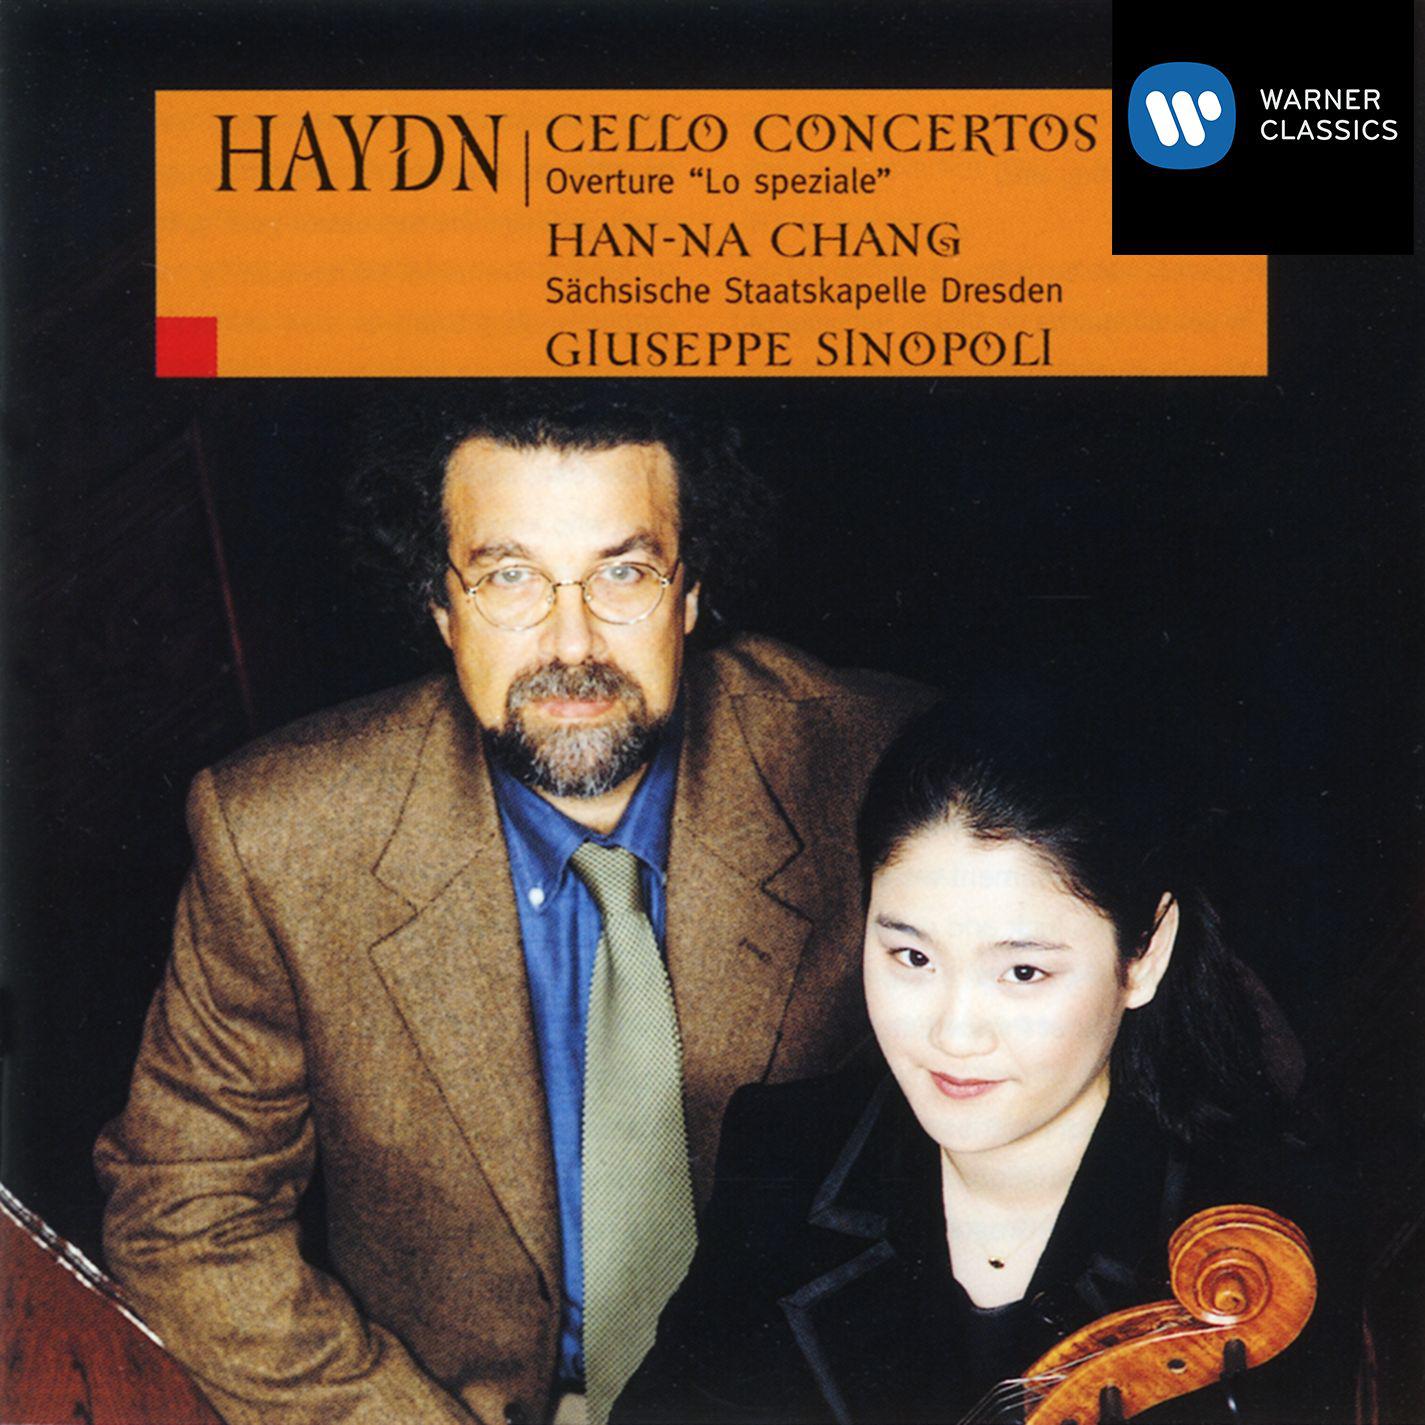 Haydn - Cello Concertos Nos. 1 & 2; Sinfonia Overtura